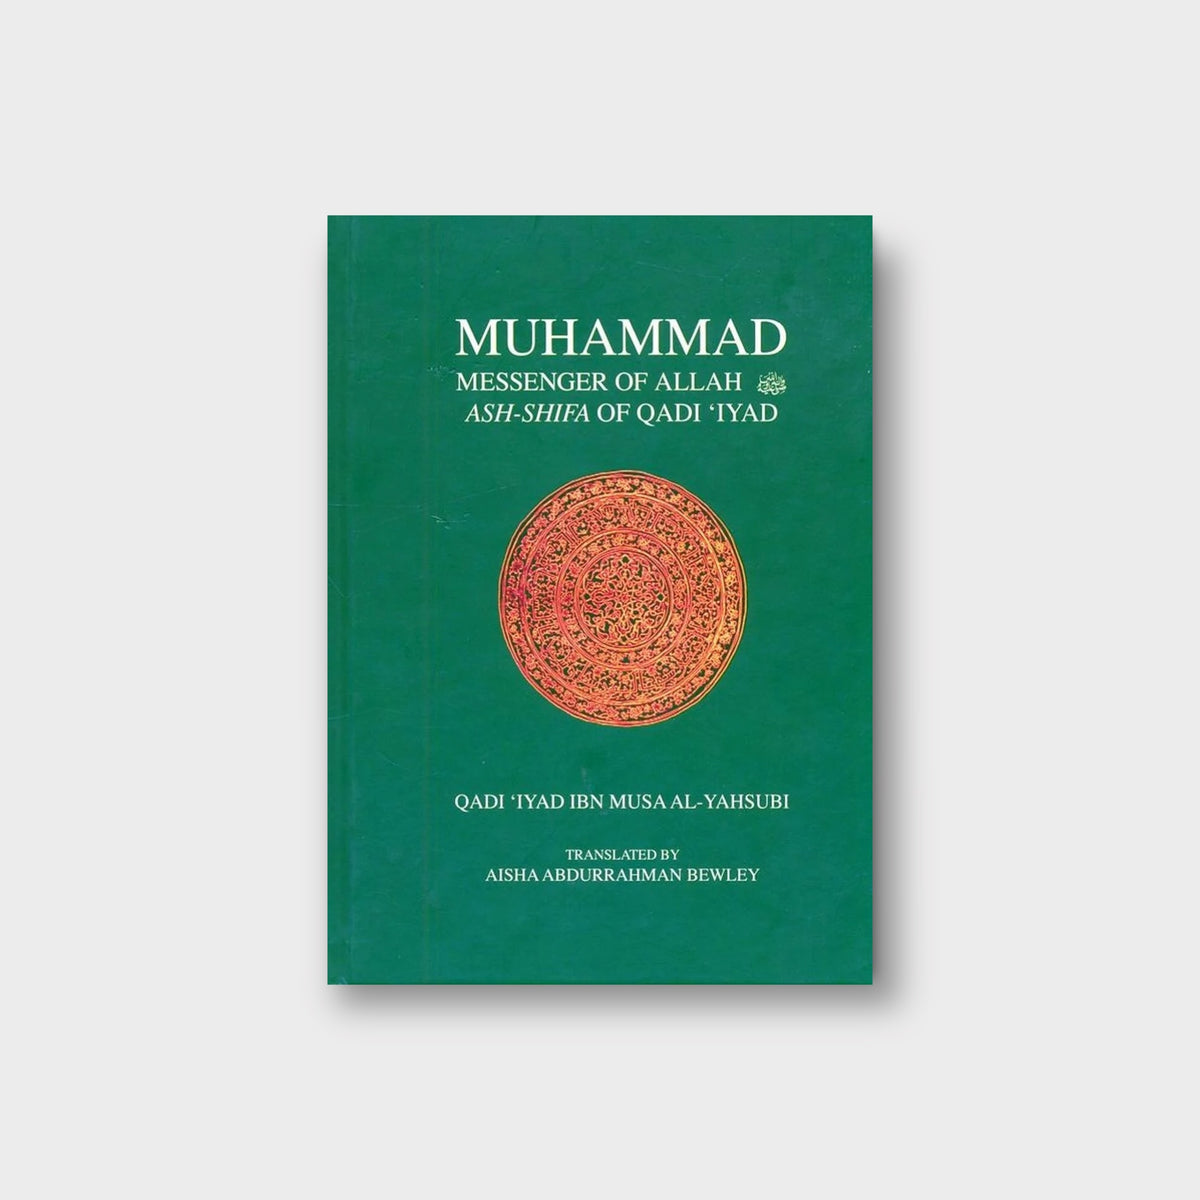 Muhammad Messenger of Allah Ash-Shifa of Qadi‘Iyad